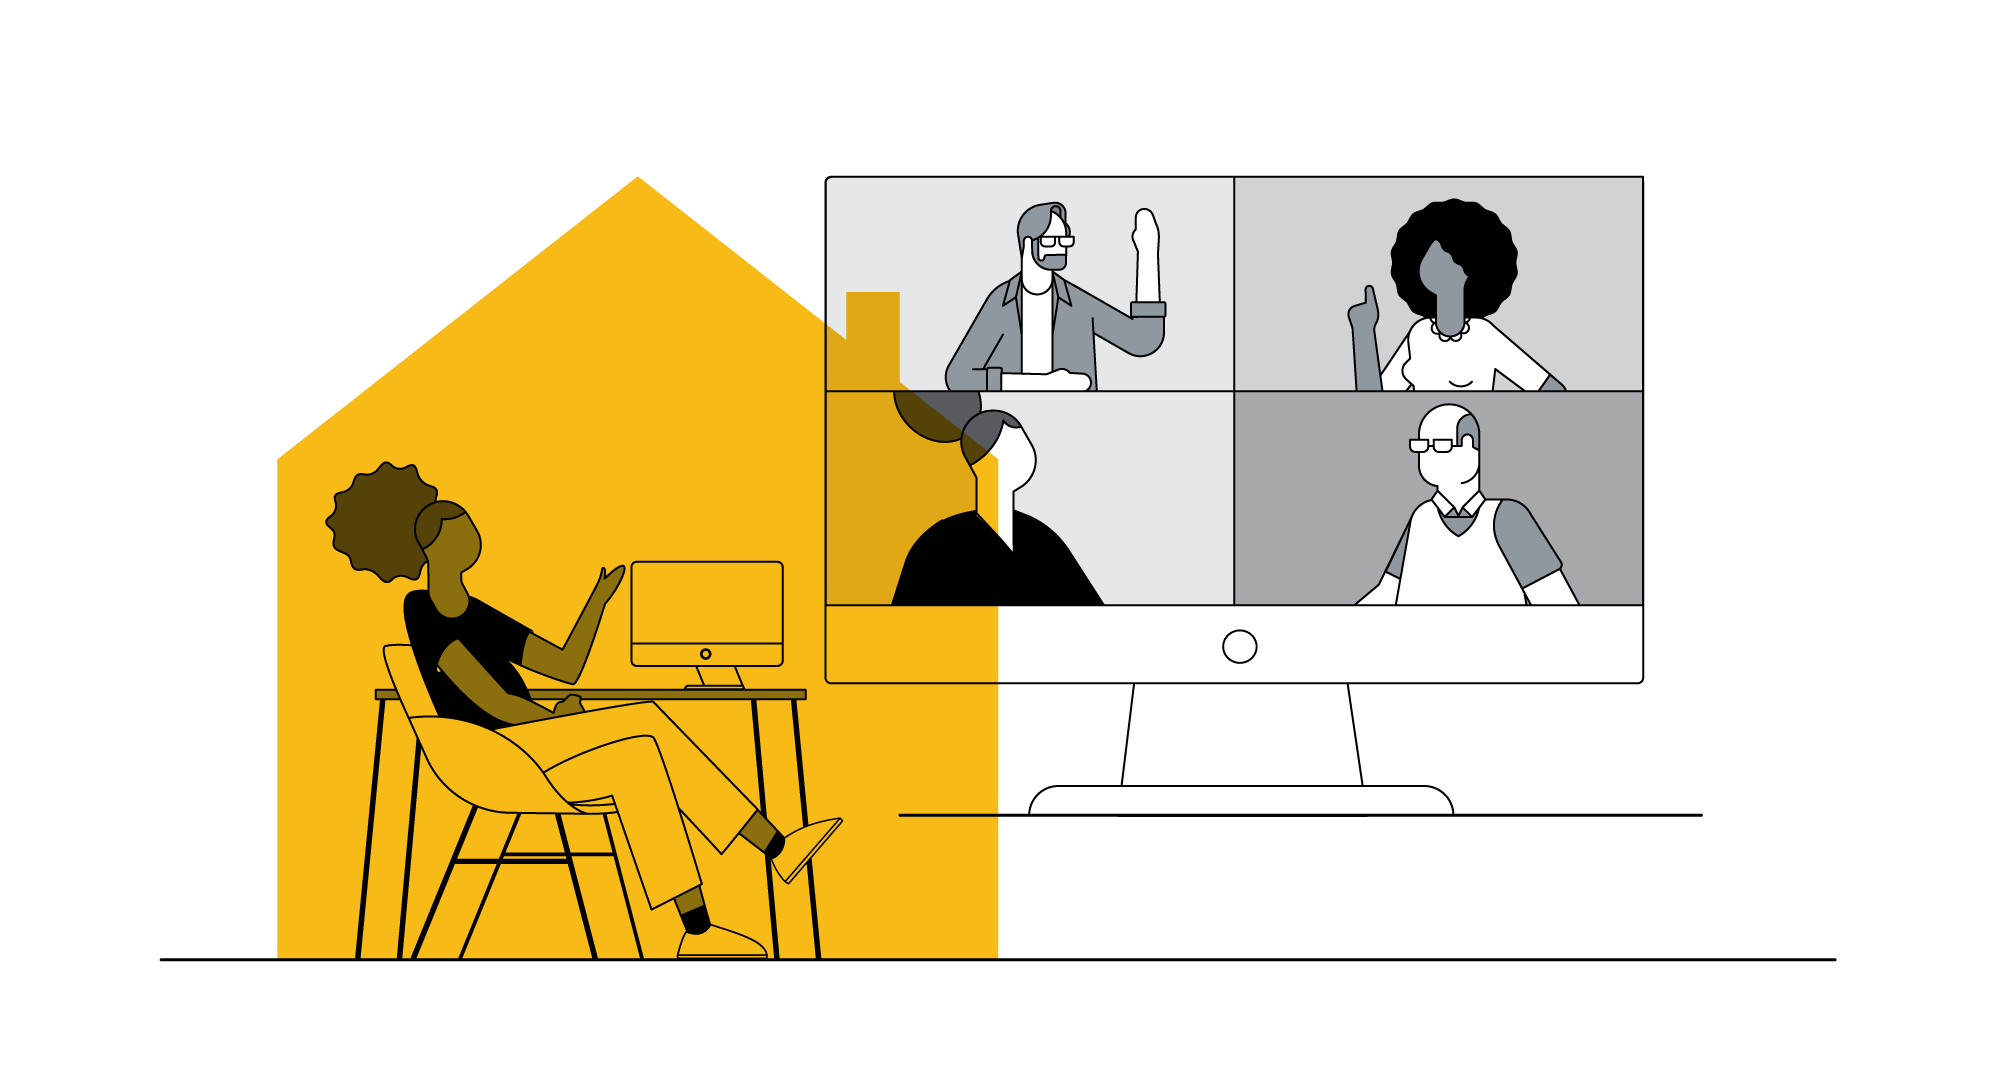 À esquerda, uma mulher negra está sentada e gesticula com sua mão. Na sua frente, há uma tela de computador em cima de uma mesa. À direita, esta tela está ampliada, e dividida em quatro retângulos. Na reunião online, há dois homens e duas mulheres.